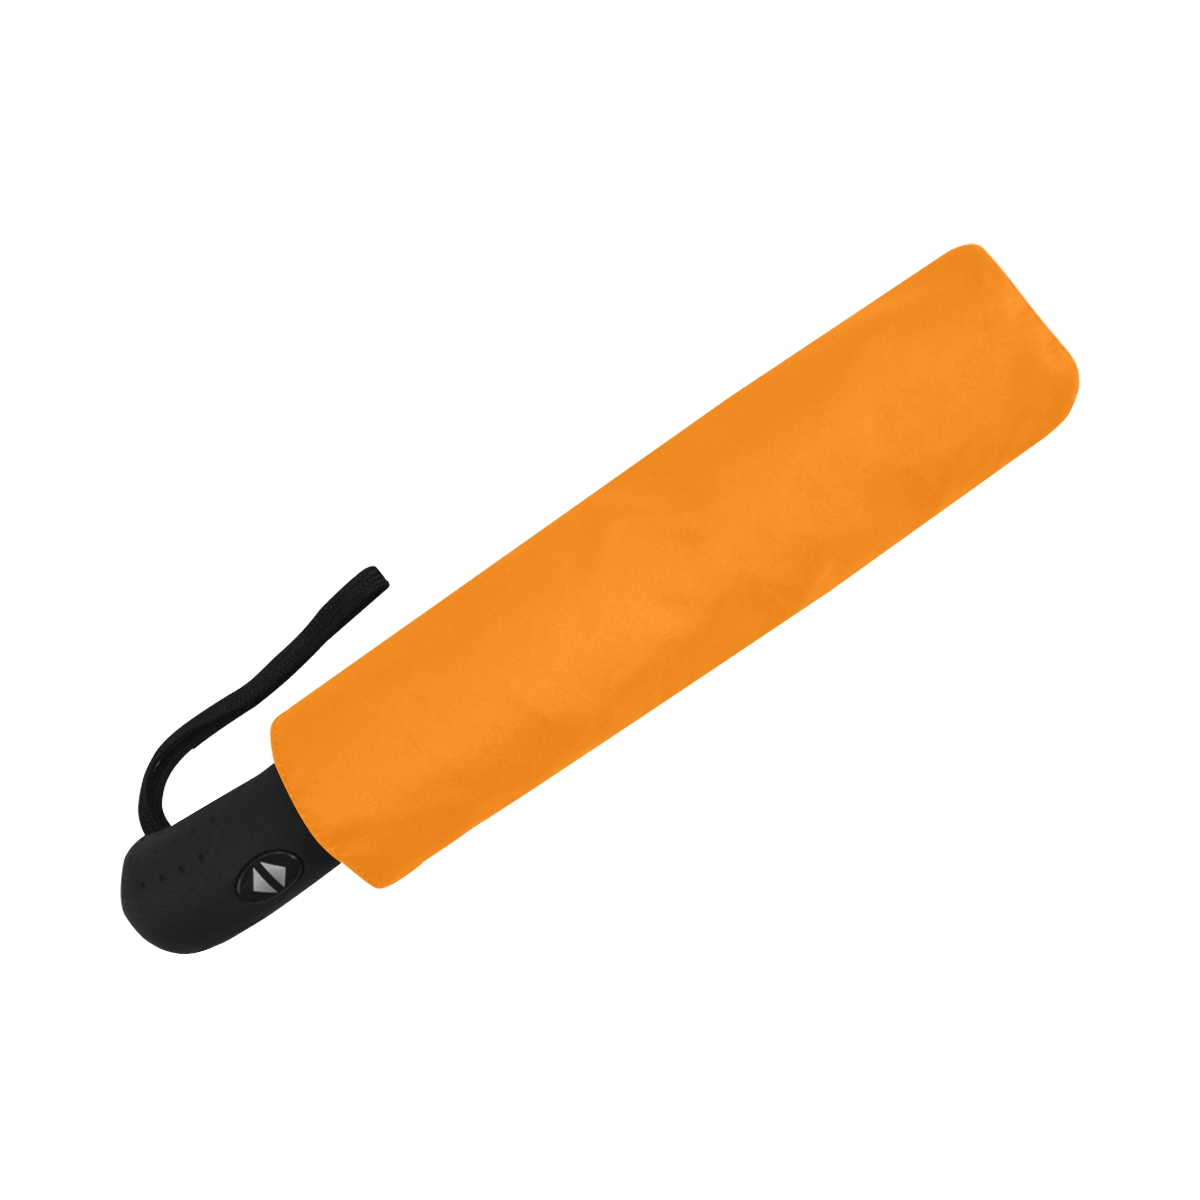 color UT orange Anti-UV Auto-Foldable Umbrella (U09)